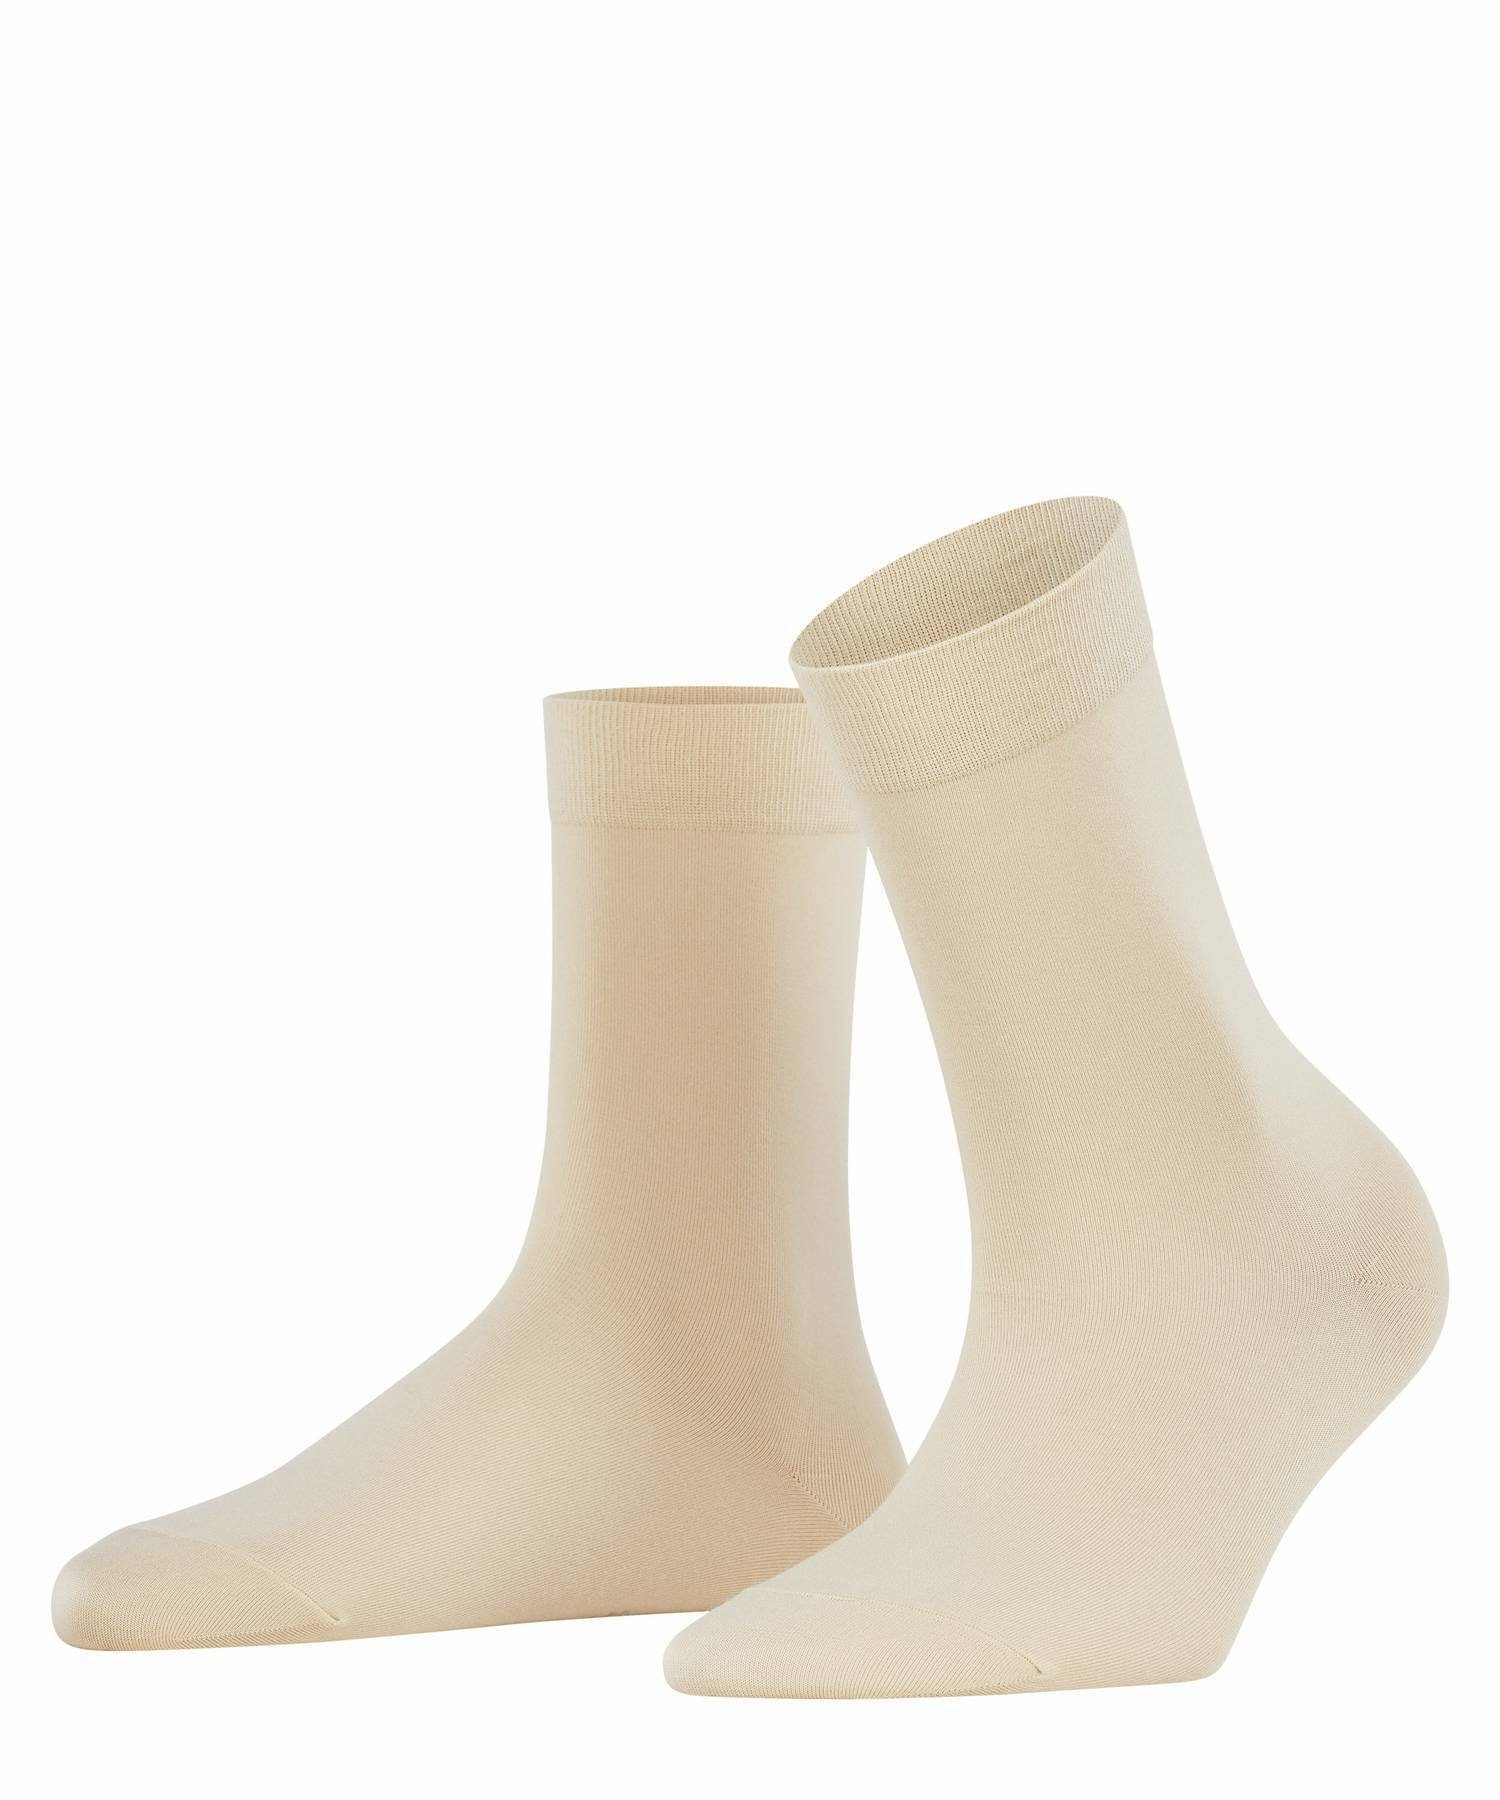 FALKE Kurzsocken Damen Socken - Cotton Touch, Kurzsocken, Knit Cream (4019)